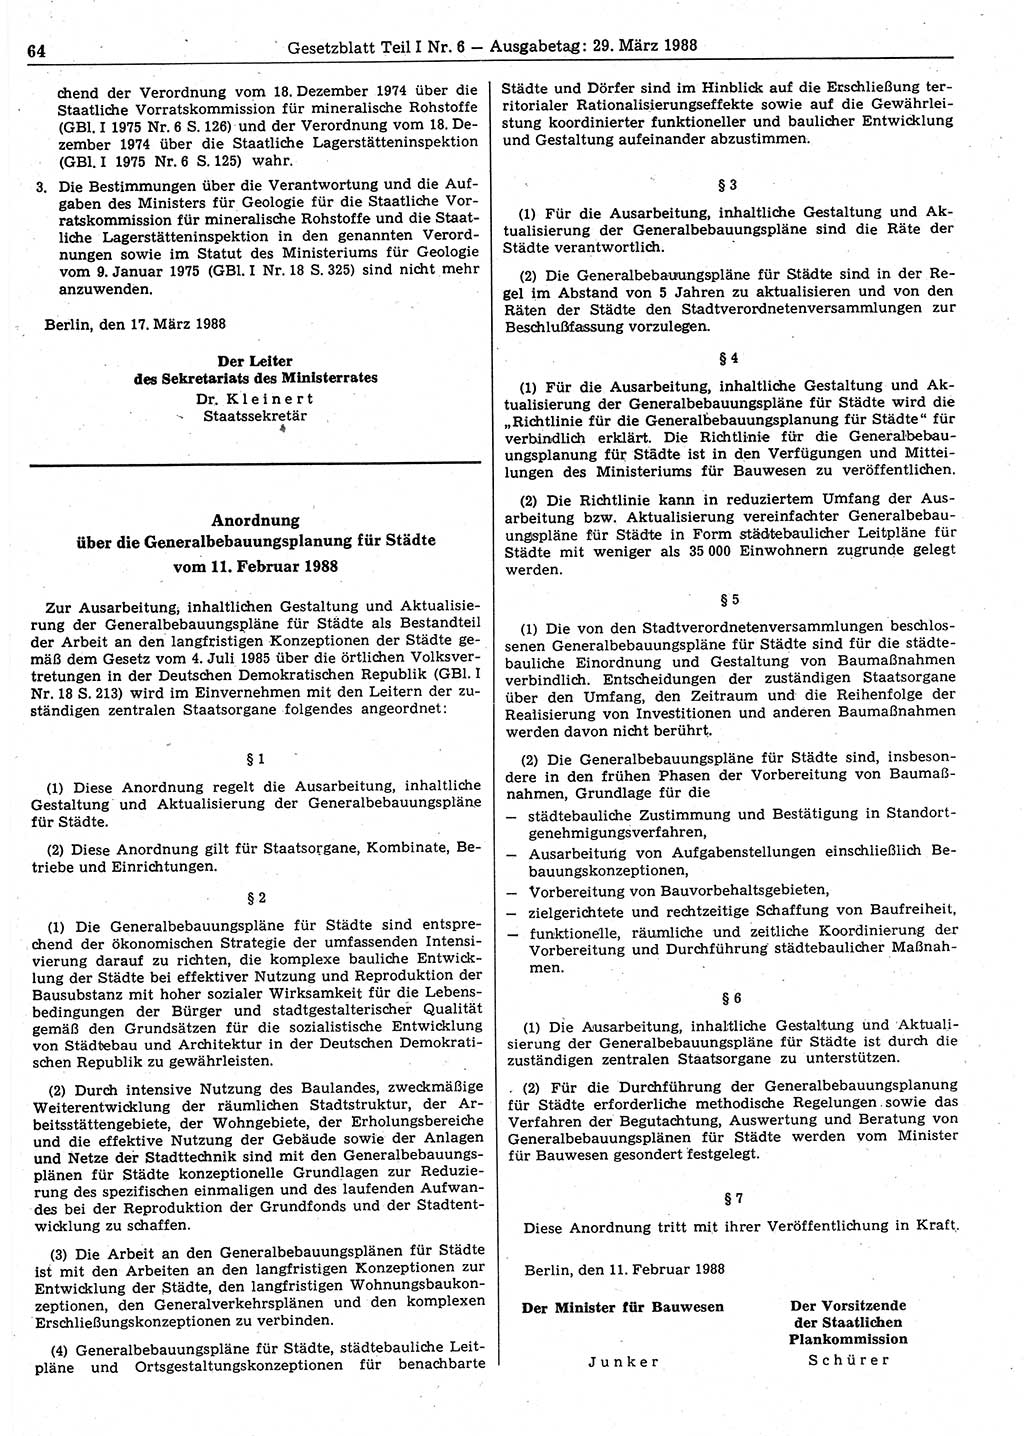 Gesetzblatt (GBl.) der Deutschen Demokratischen Republik (DDR) Teil Ⅰ 1988, Seite 64 (GBl. DDR Ⅰ 1988, S. 64)